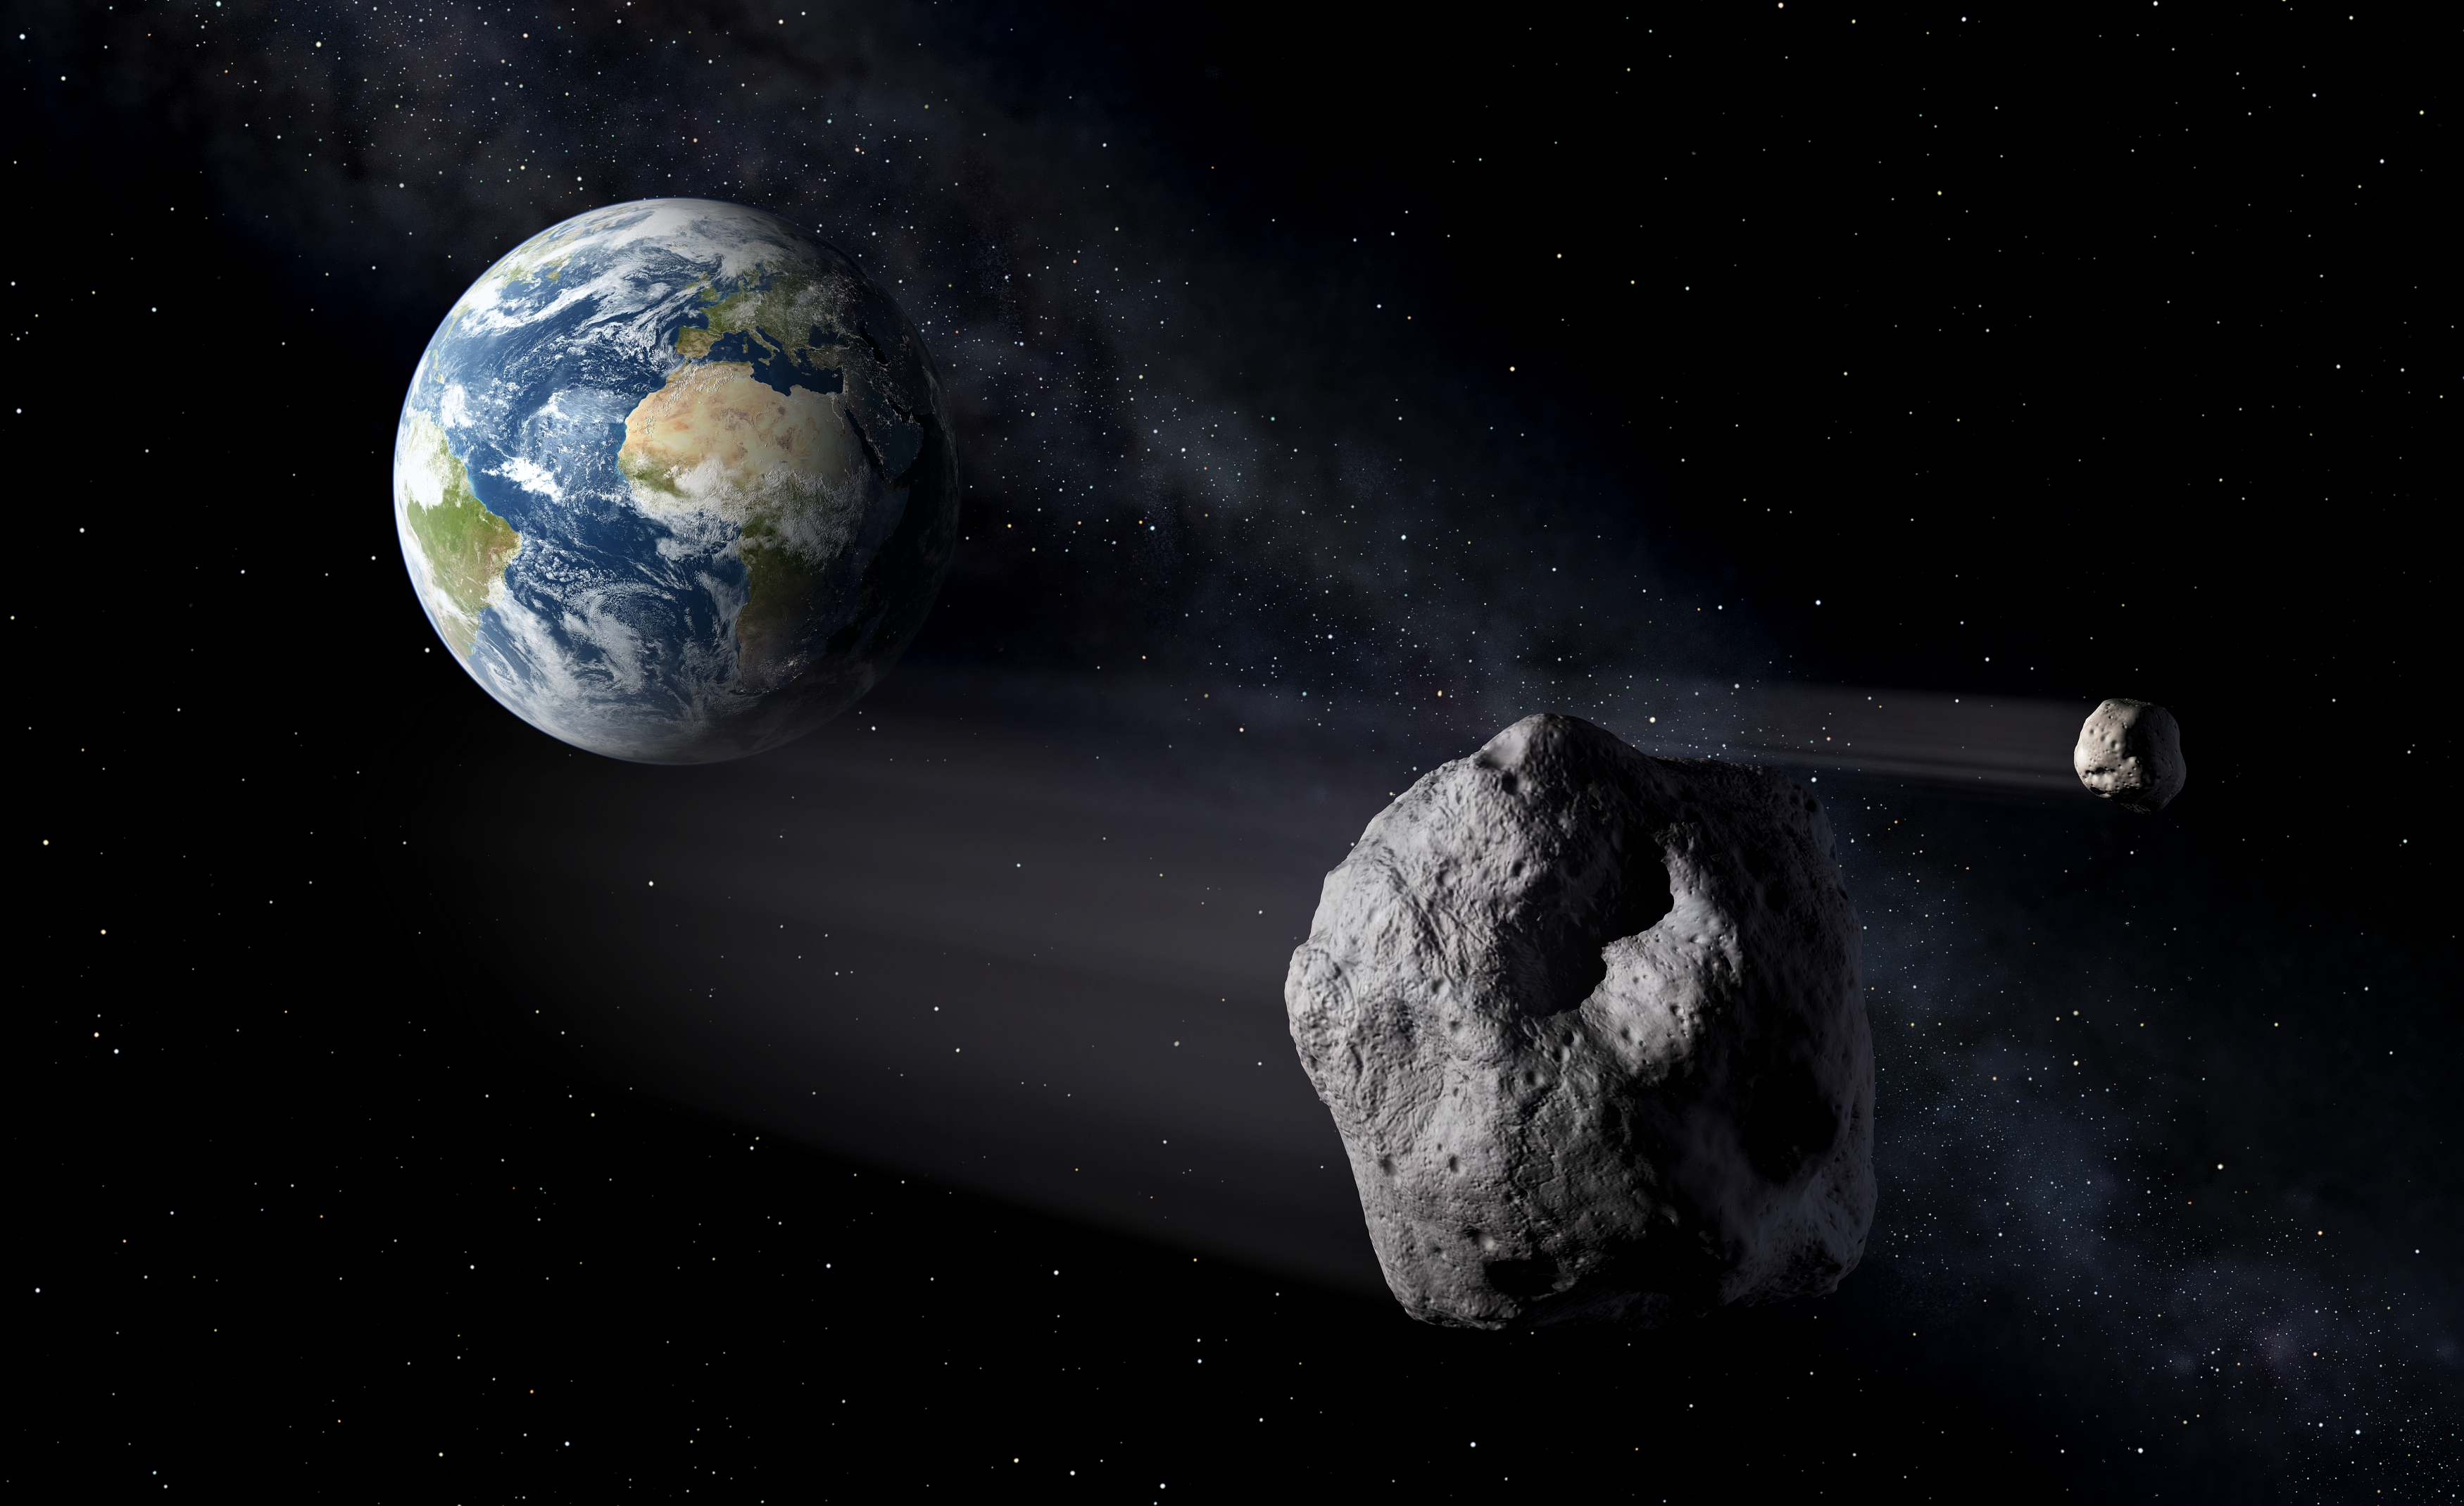 Vue d'artiste d'un astéroïde s'approchant de la Terre. © ESA, P.Carril